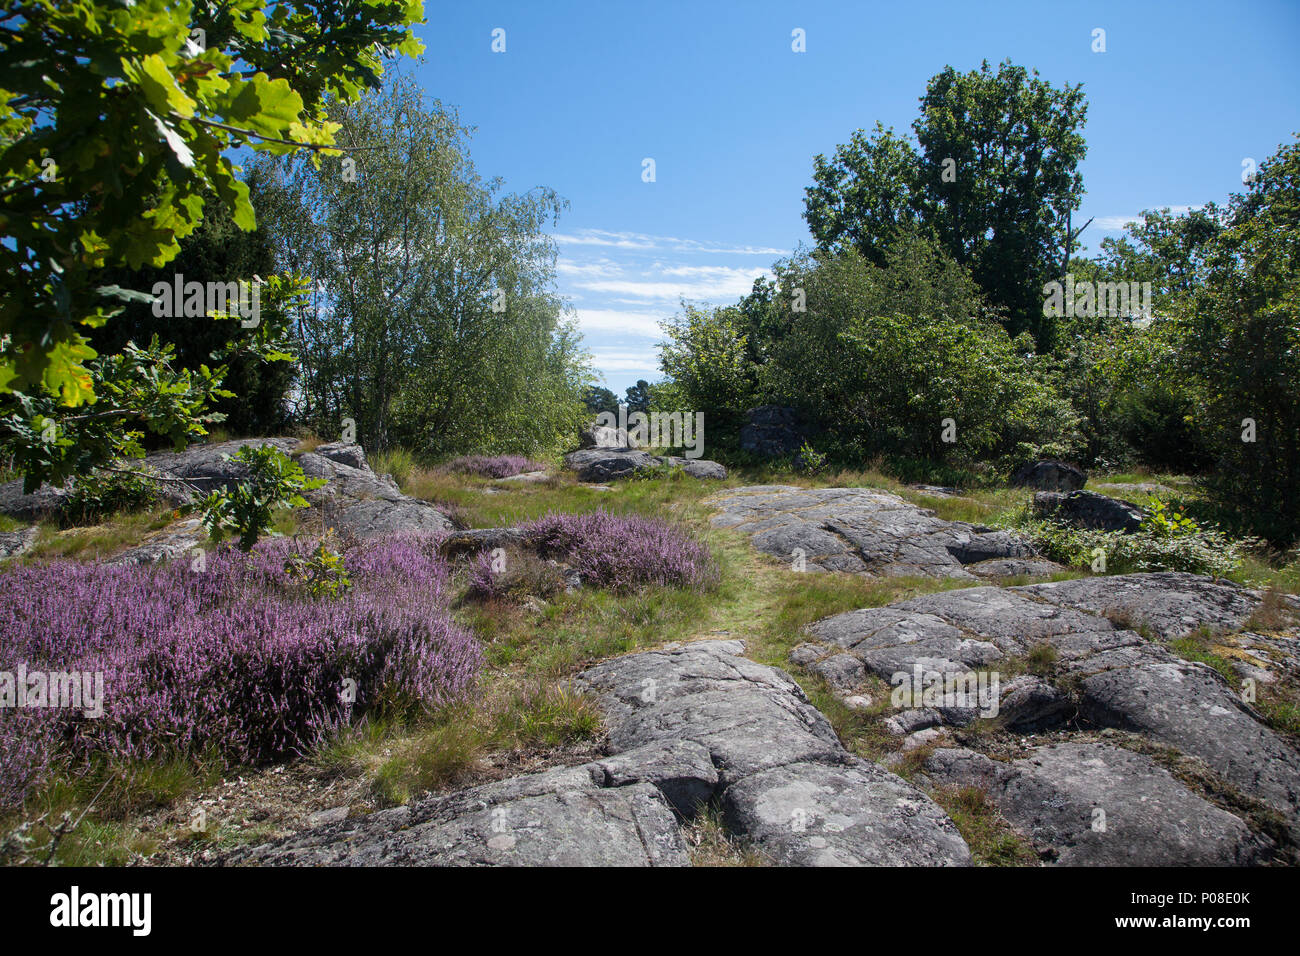 Typische Landschaft in Südschweden typische Landschaft in Schweden Stockfoto